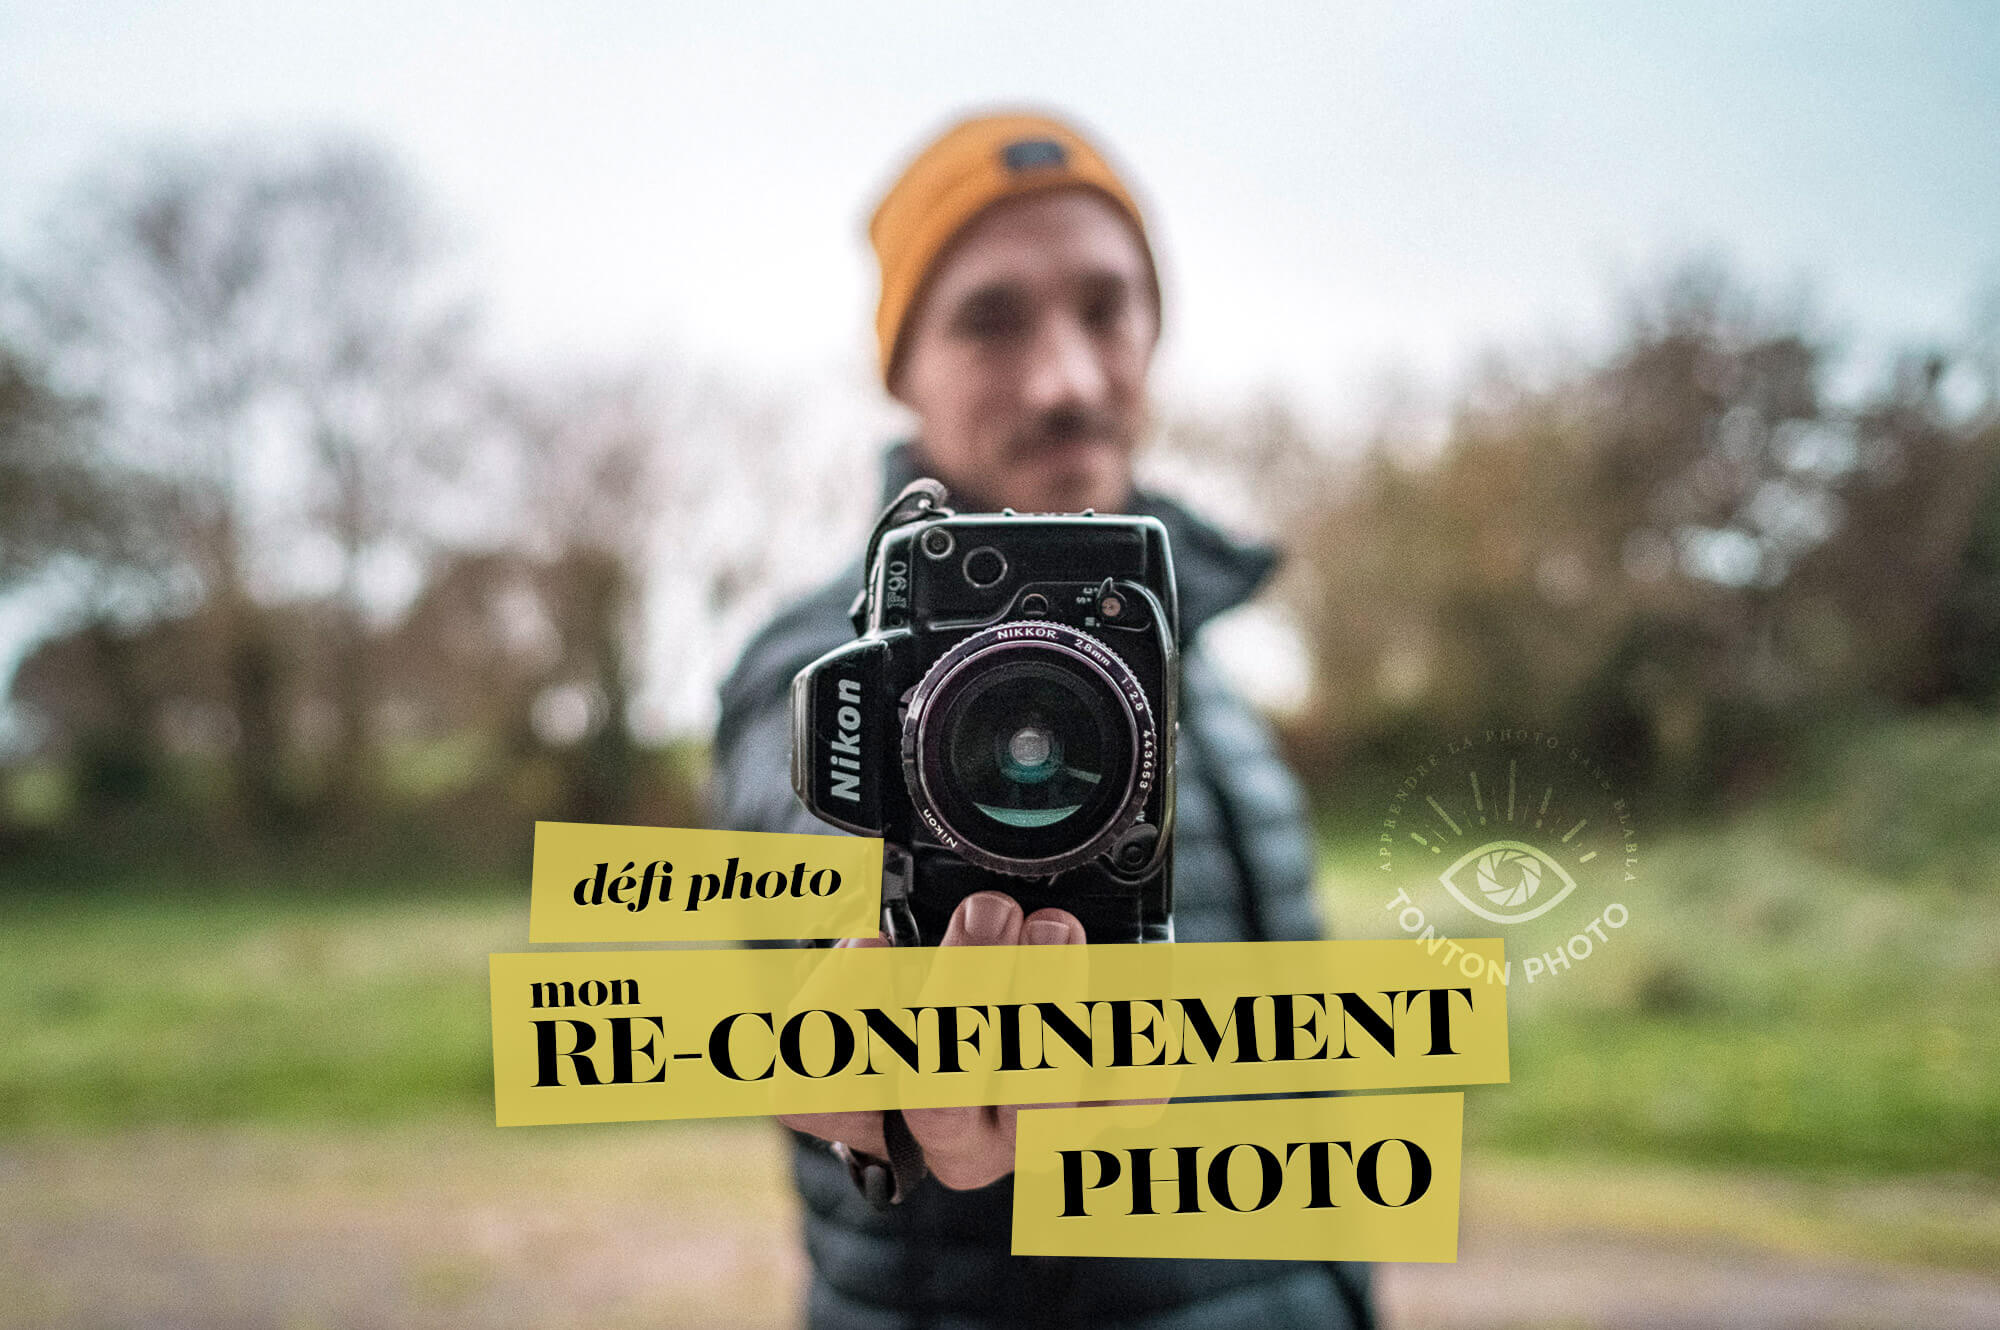 Second défi photo #monconfinementphoto : l'occasion de faire progresser votre créativité photographique pendant le re-confinement ! © Clément Racineux / Tonton Photo